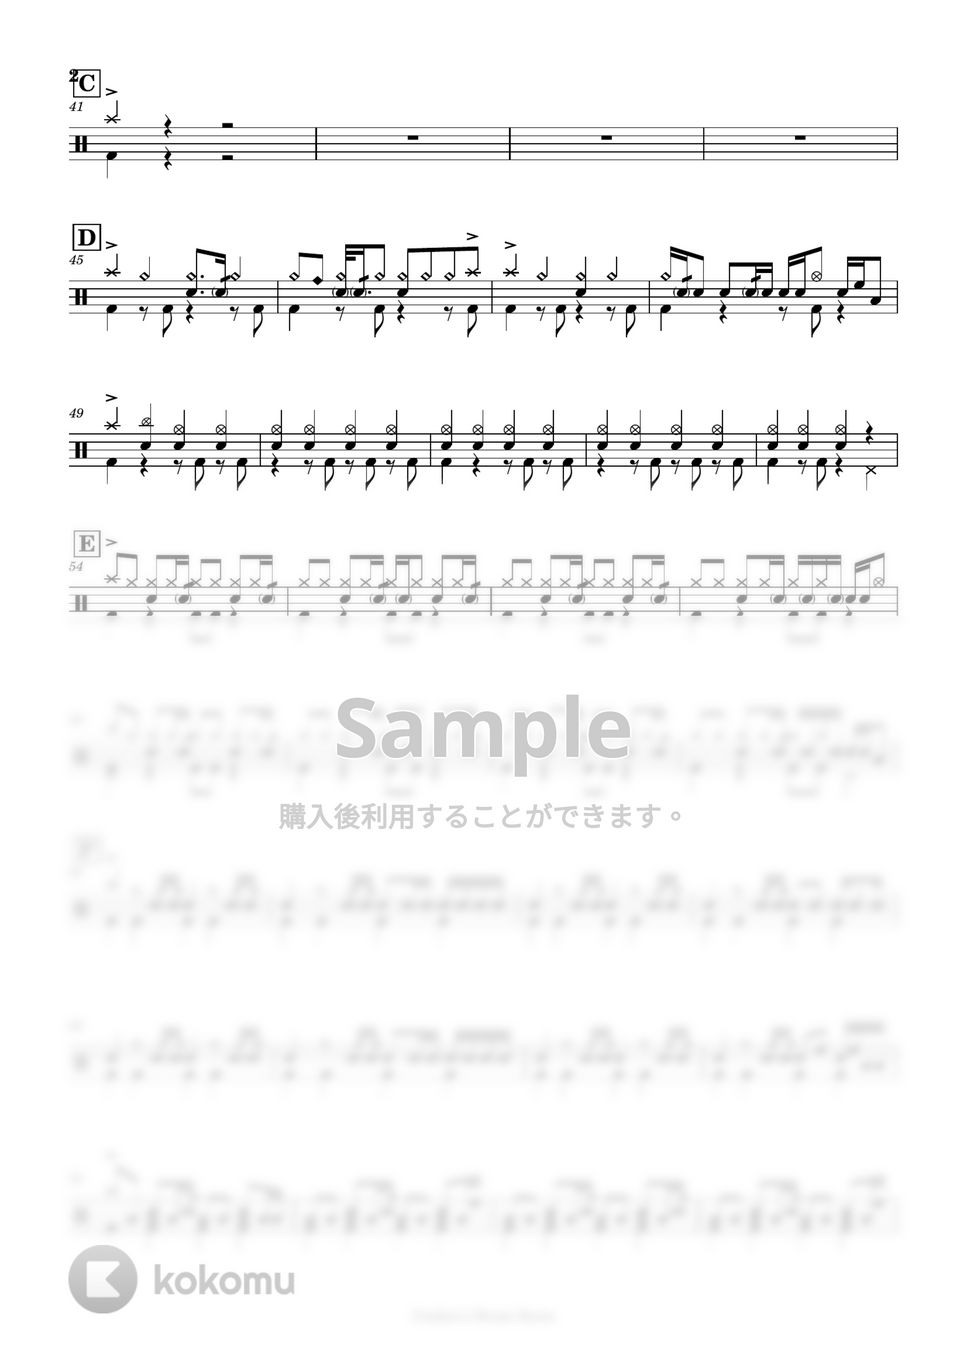 ヨルシカ - パレード by Cookie's Drum Score